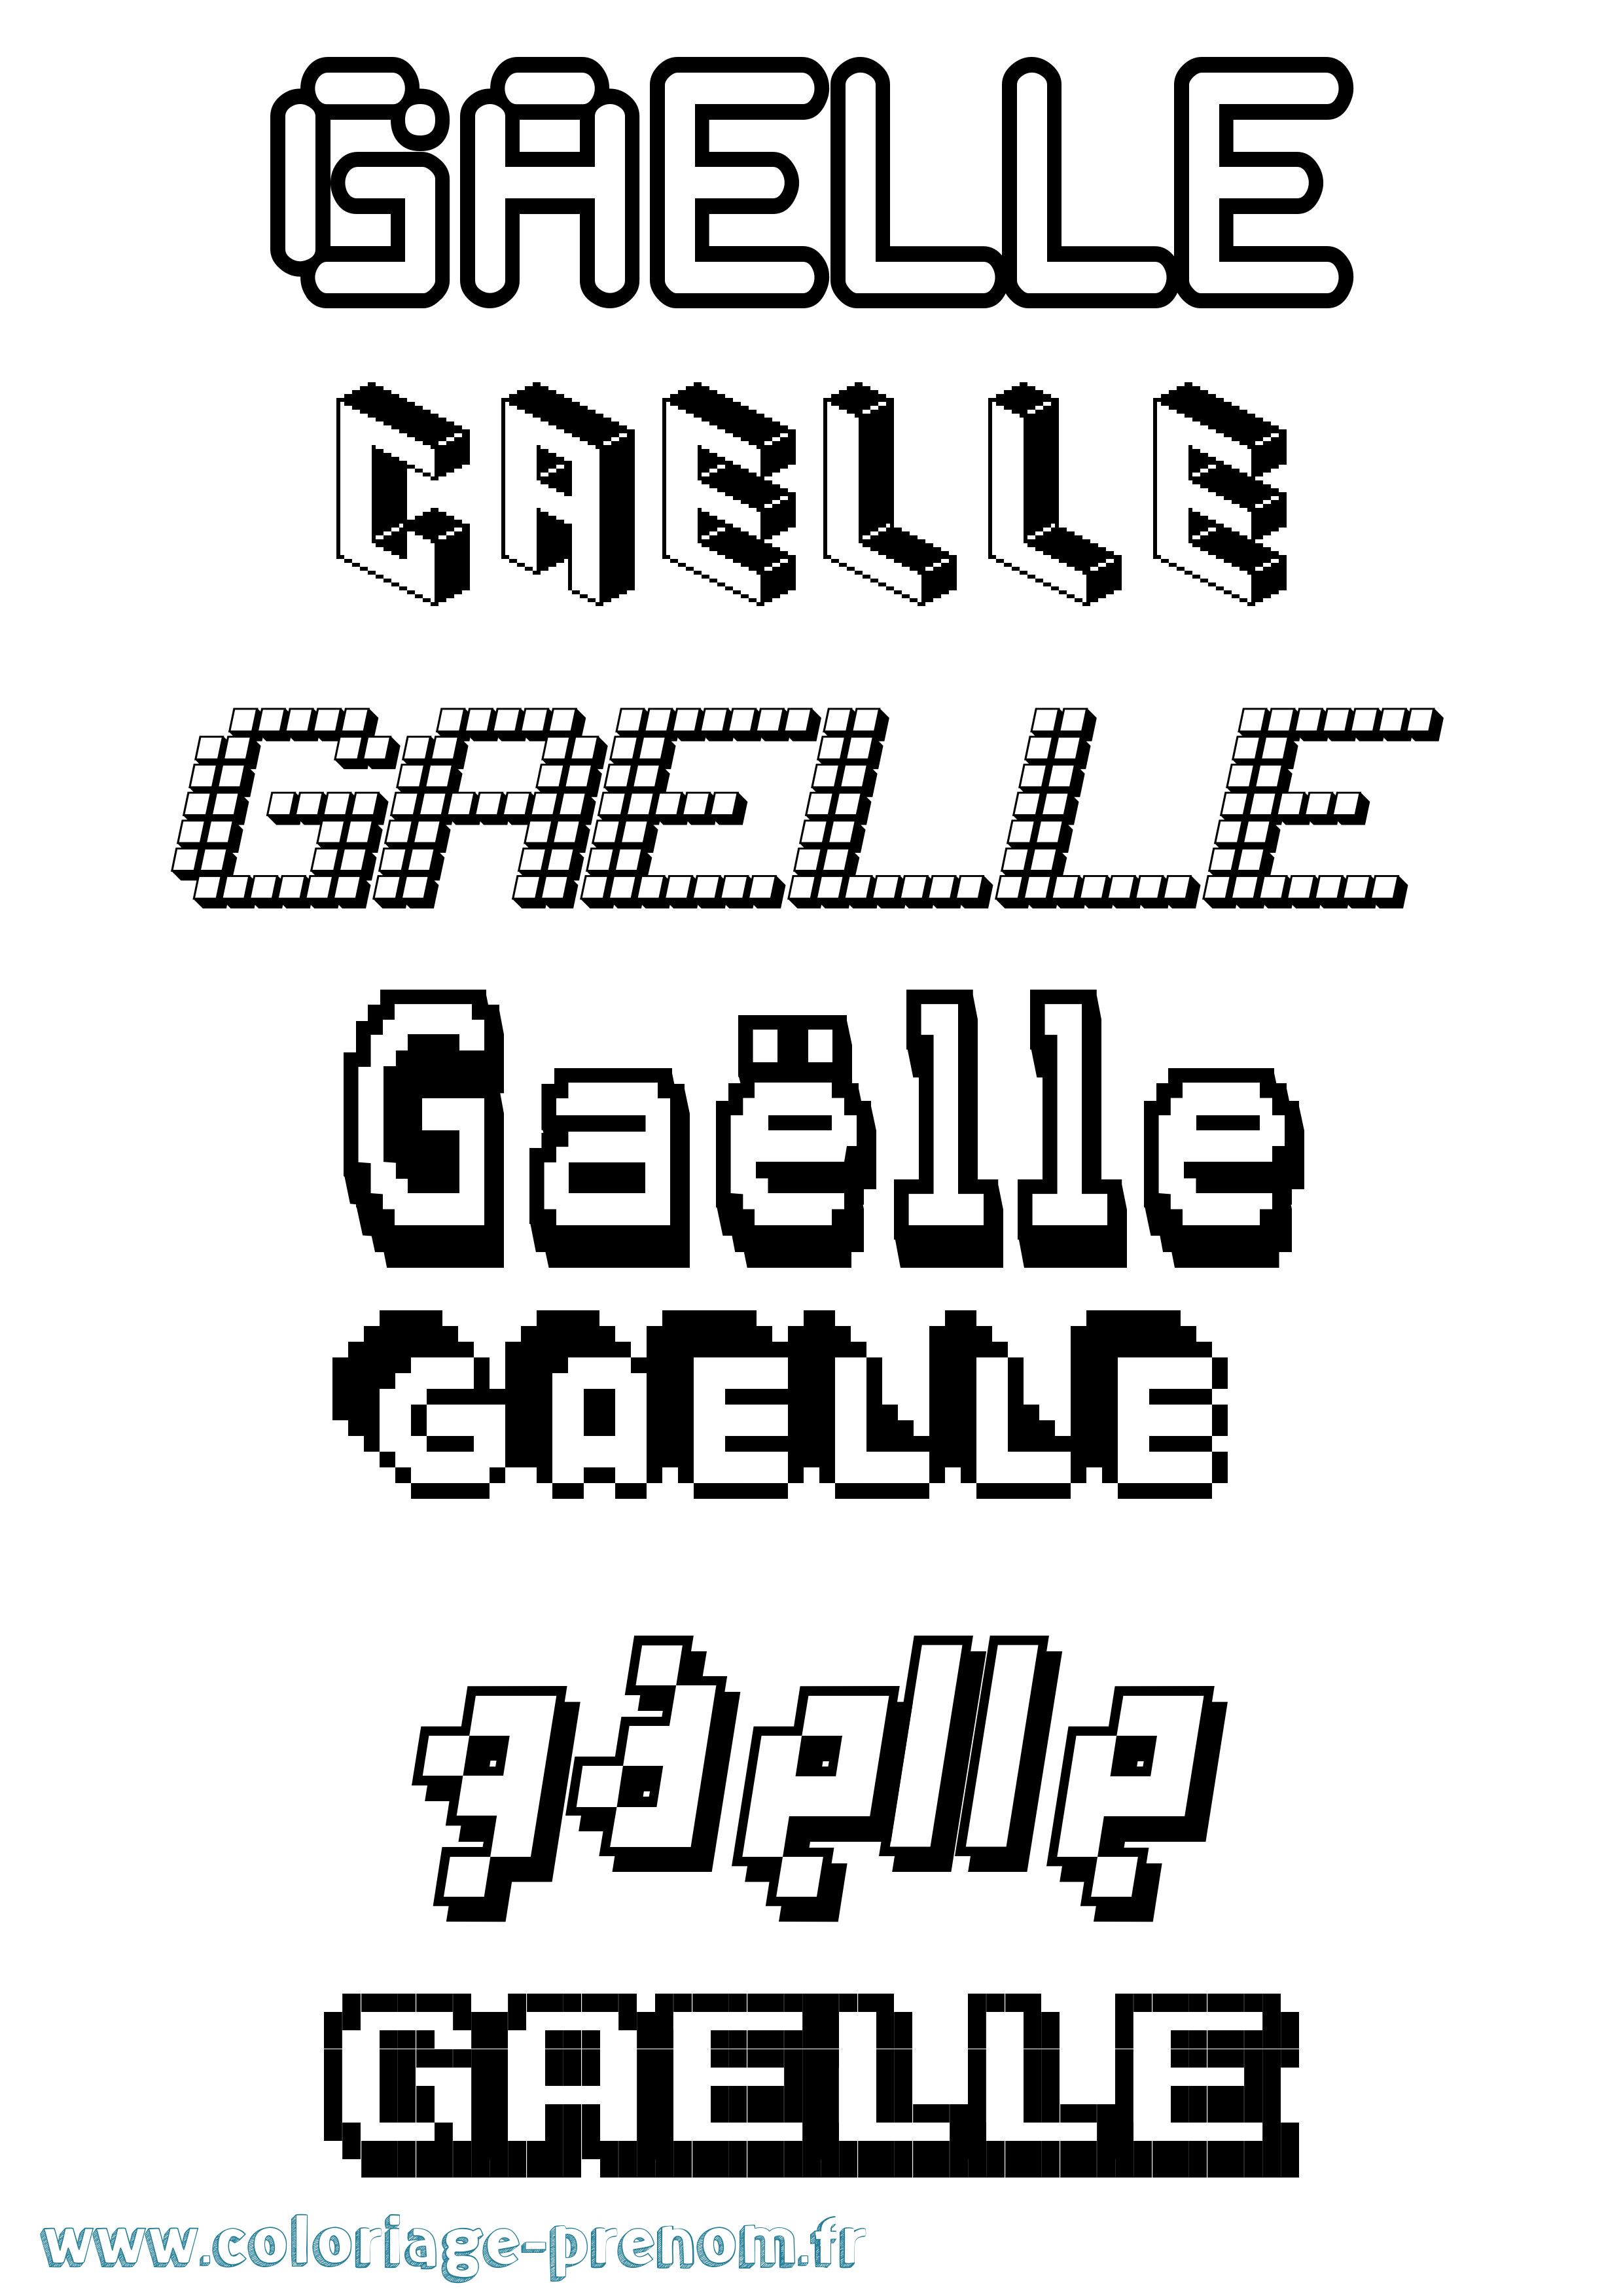 Coloriage prénom Gaëlle Pixel